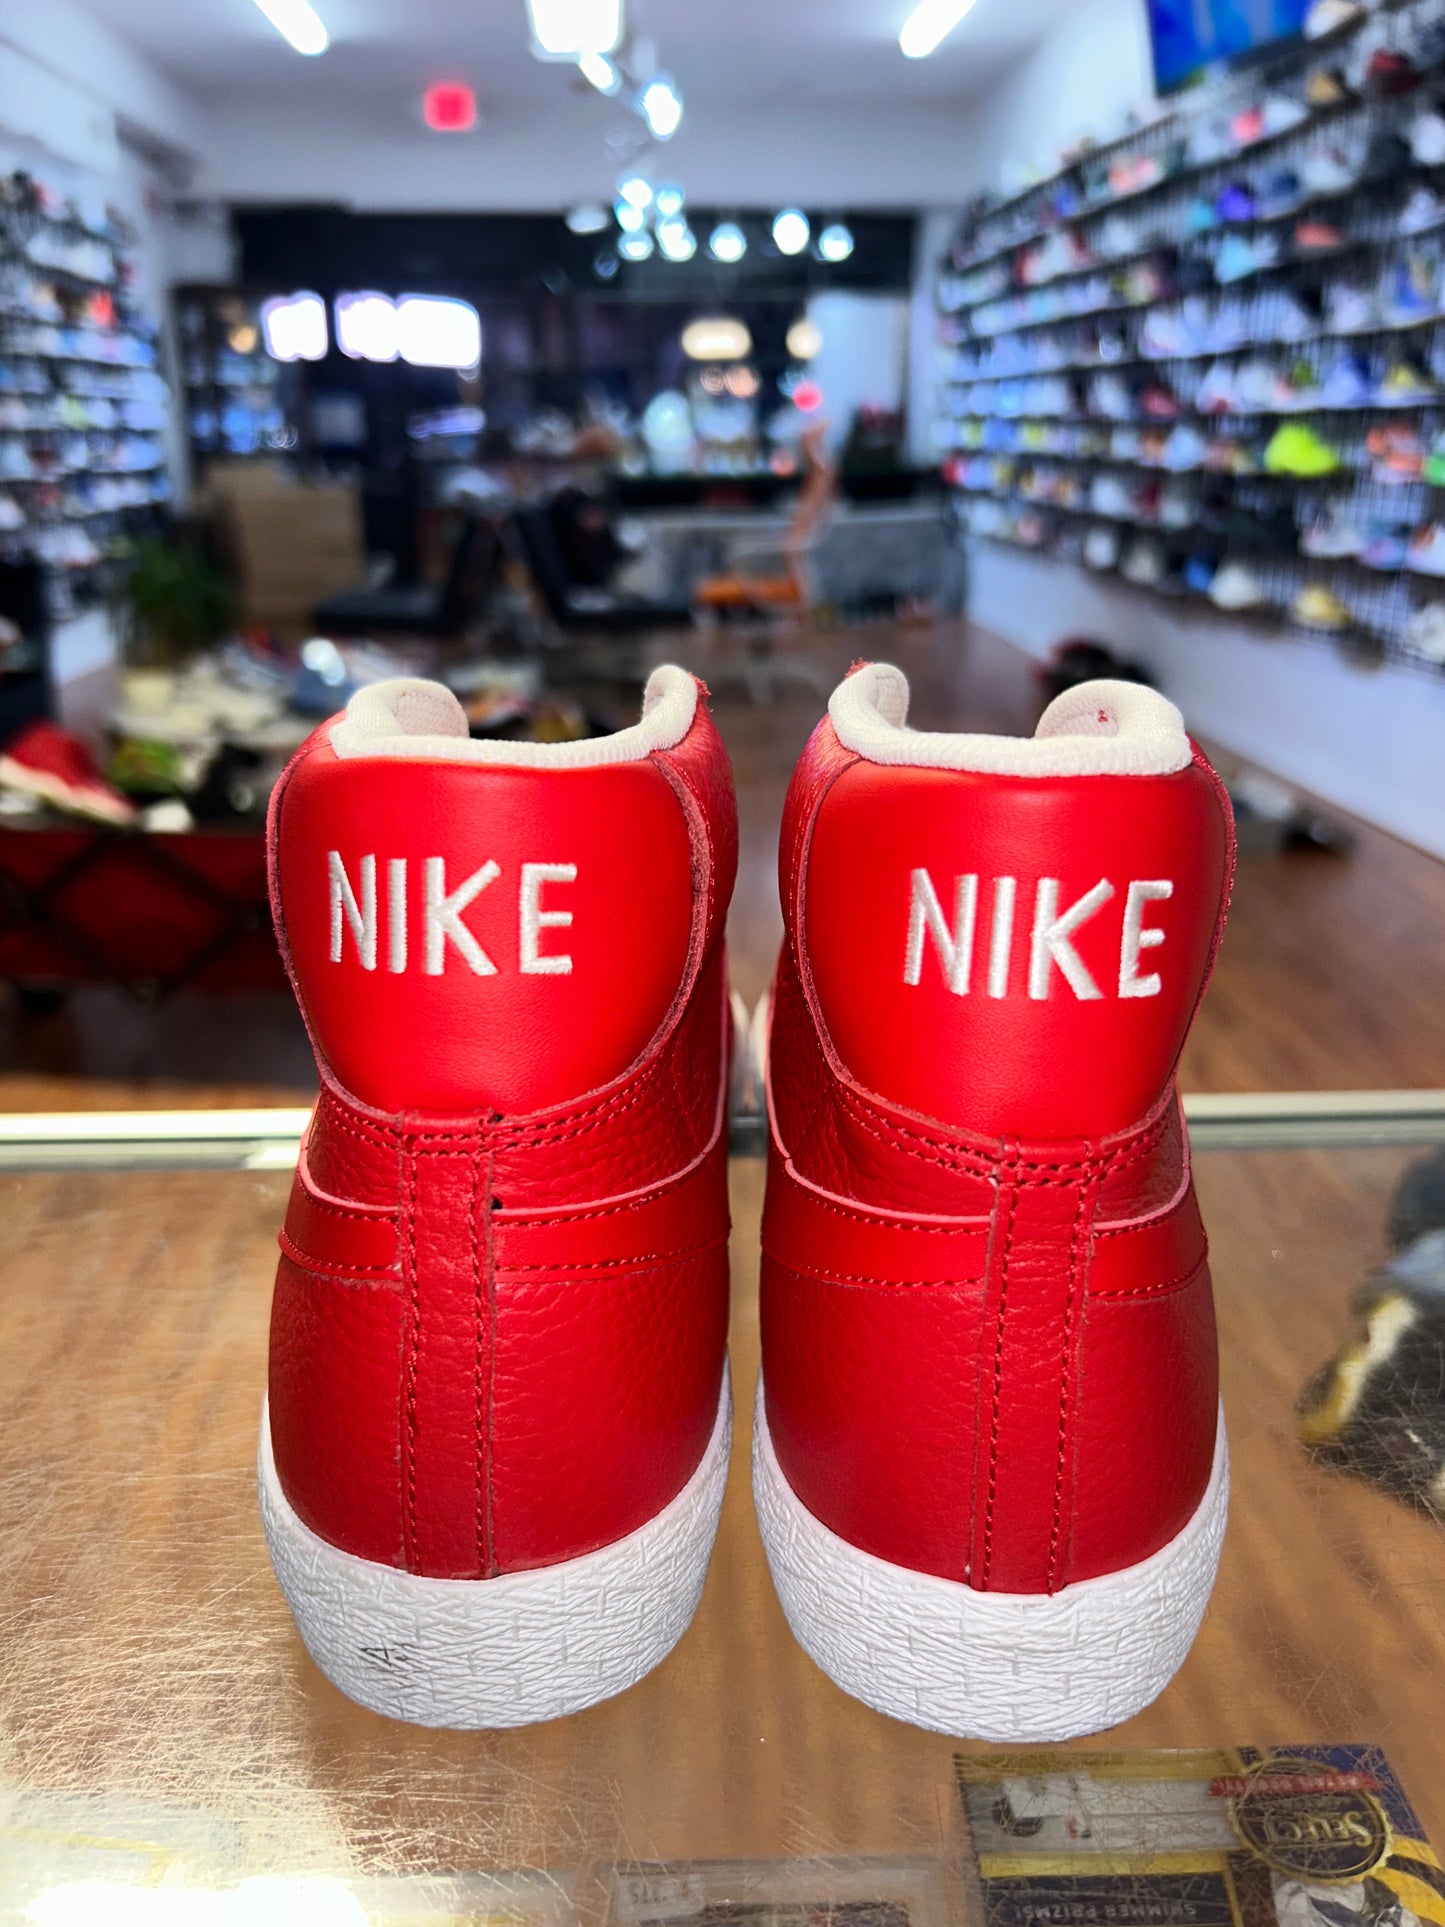 Size 9.5 Nike Blazer Mid “Red Leather” Brand New (MAMO)